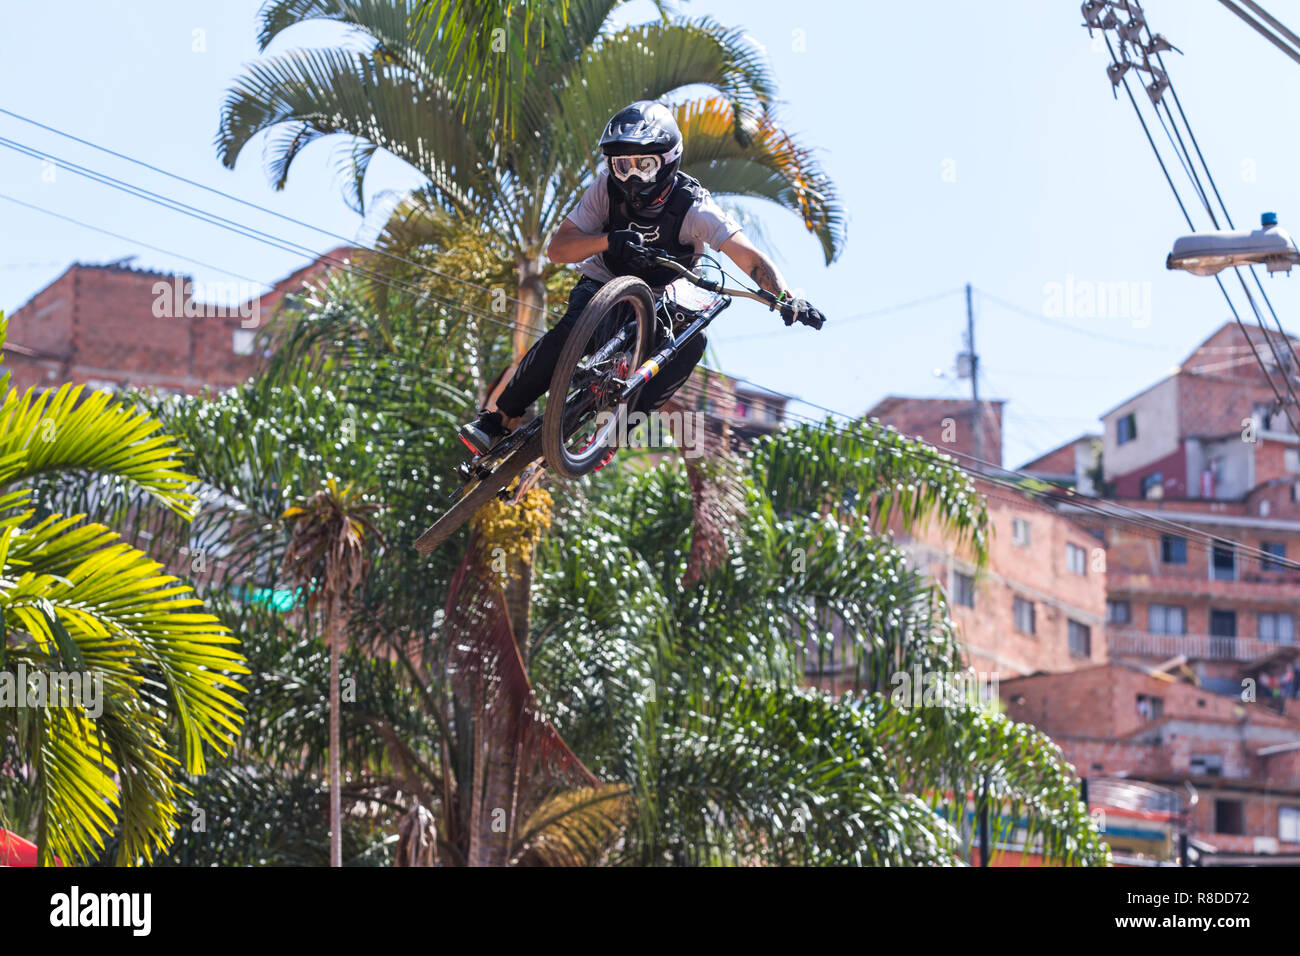 Nicolas Correa touring la piste pendant la descente à Medellin 2018 Défi. Le vélo qui a eu lieu ce 2 décembre 2018 dans les quartiers o Banque D'Images